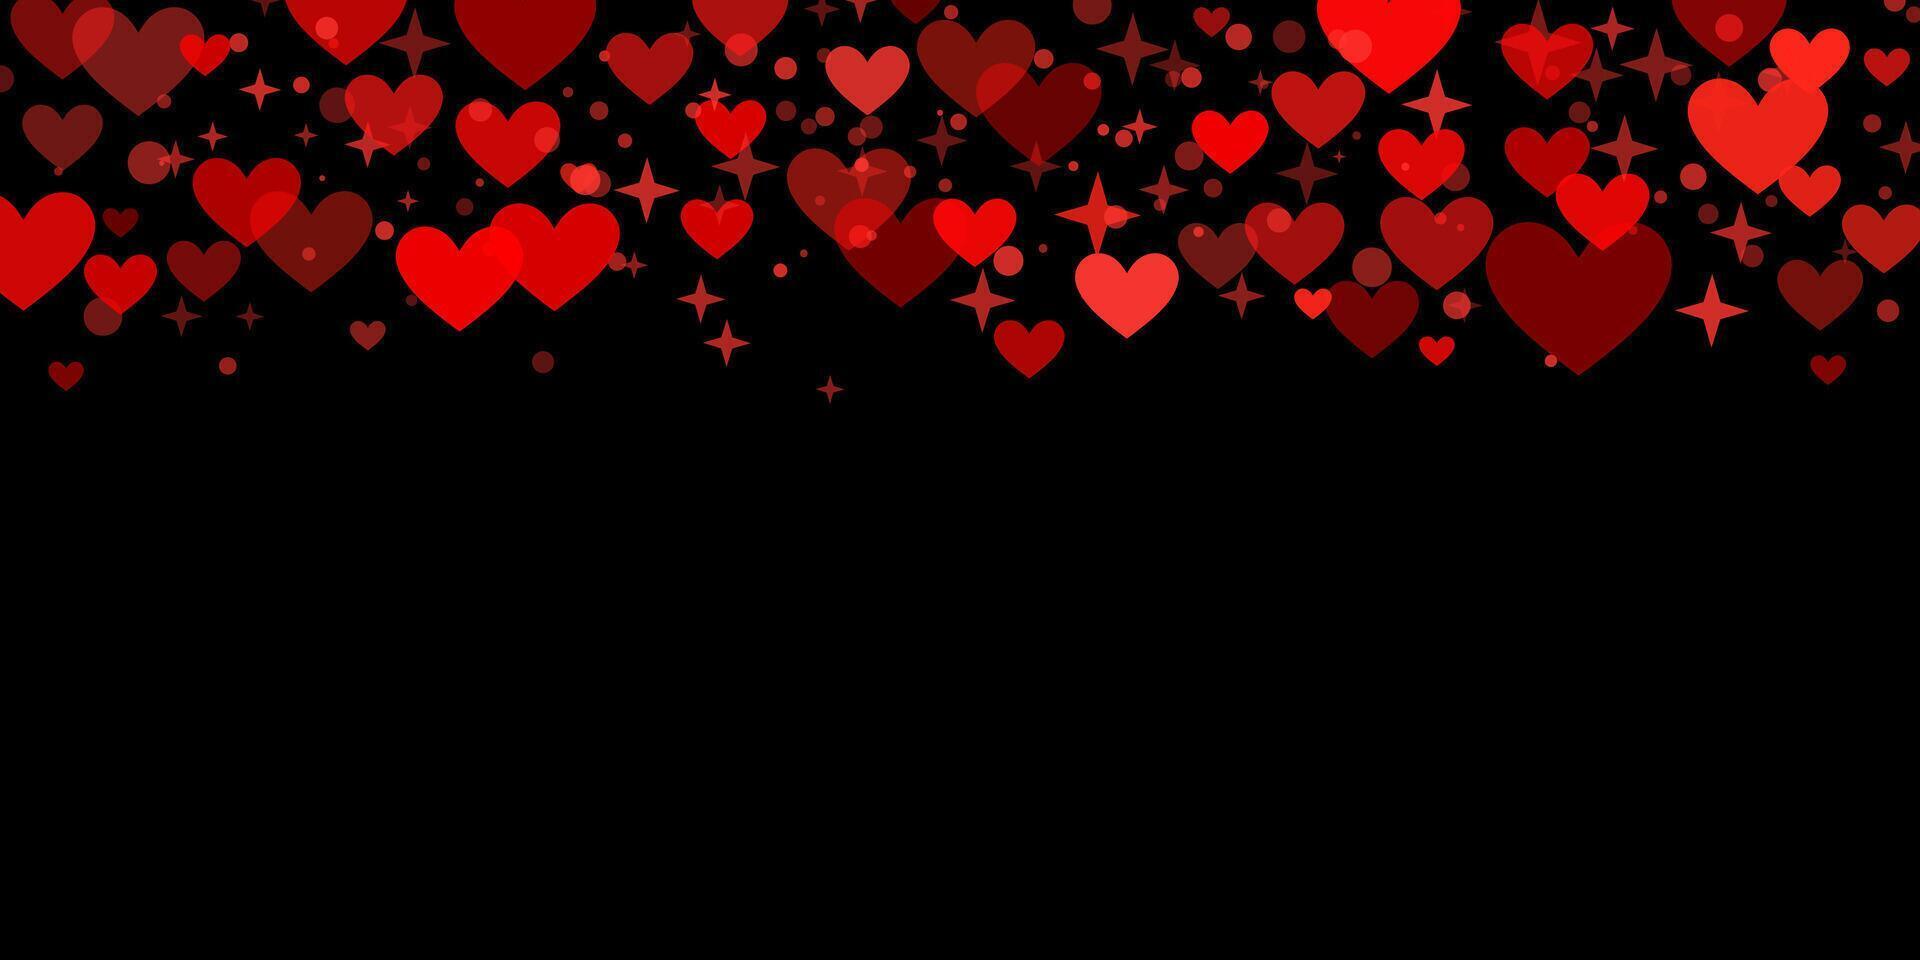 negro y rojo enamorado día papel picado antecedentes con corazones y estrellas, oscuro fondo de pantalla vector